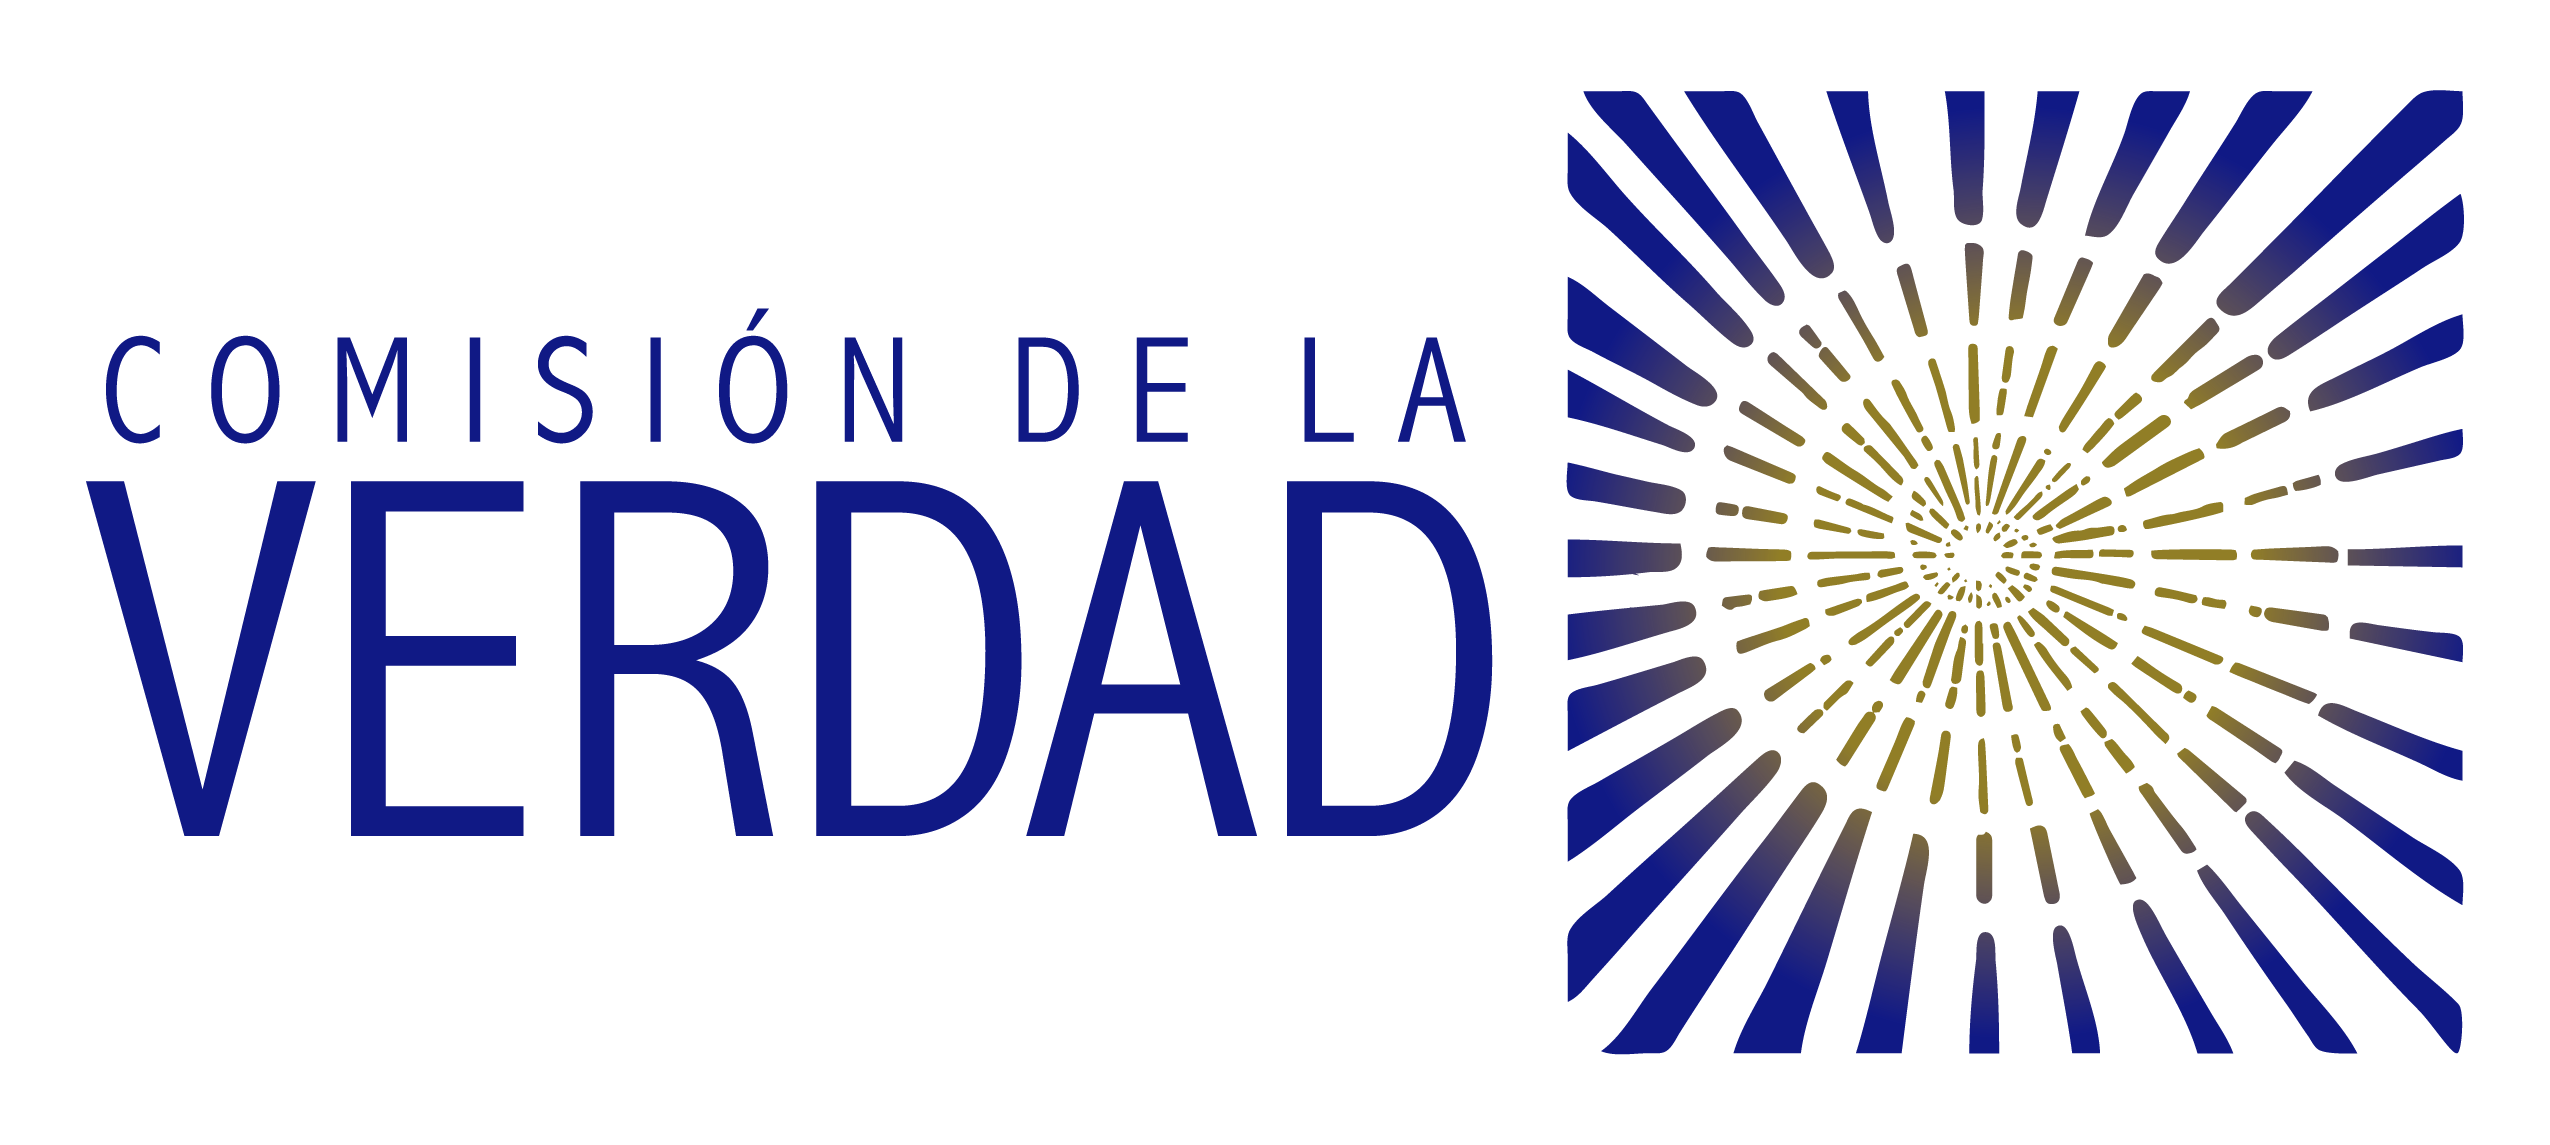 Logo Comisión de la Verdad